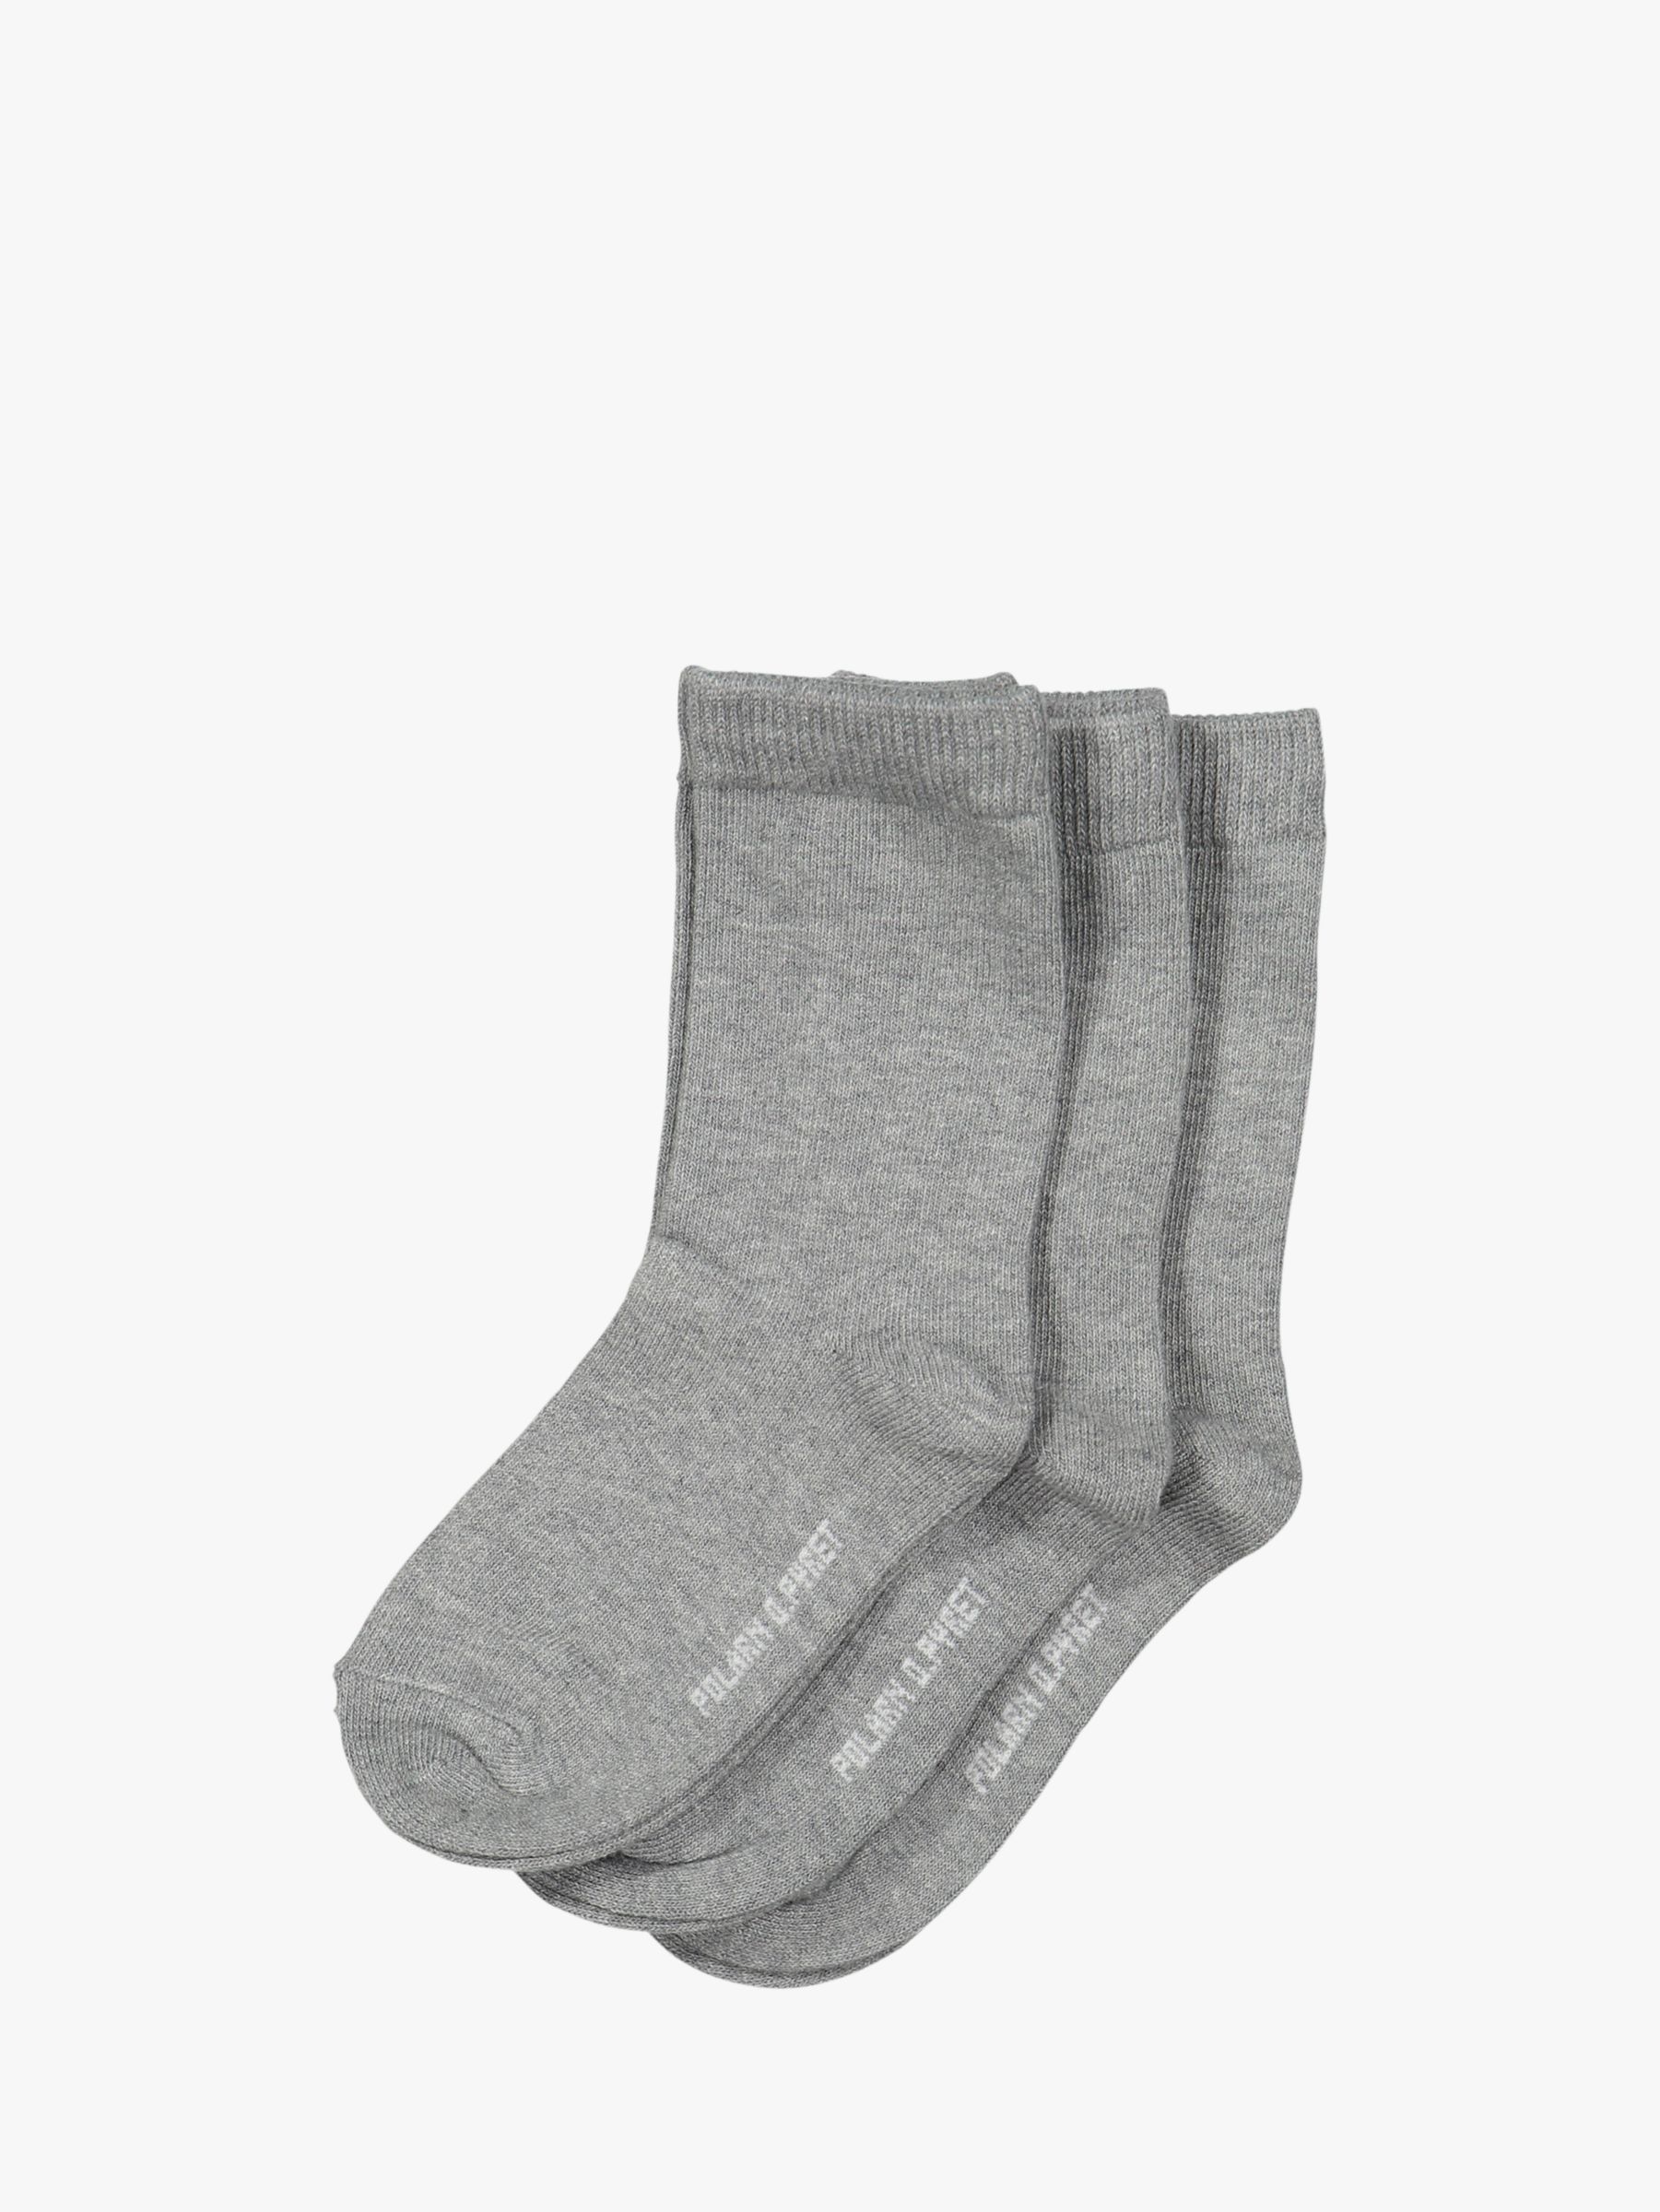 Polarn O. Pyret Children's Plain Socks, Pack of 3